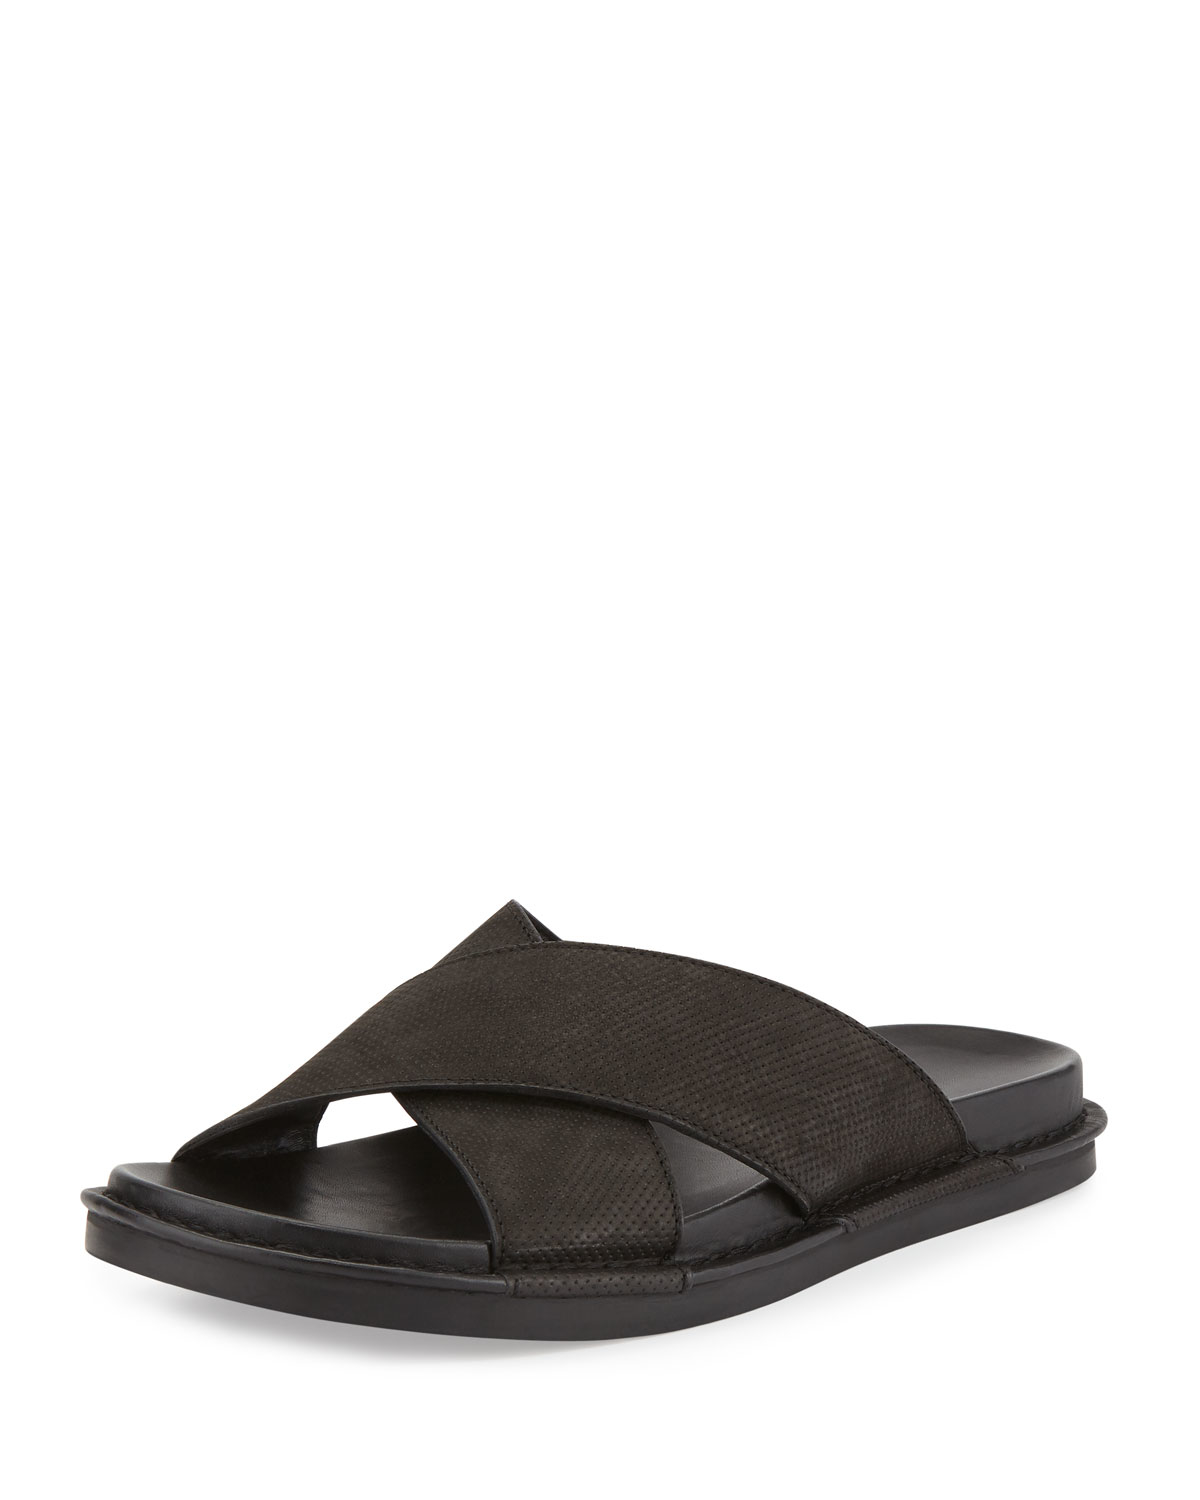 Lyst - Vince Crisscross Leather Slide Sandal in Black for Men